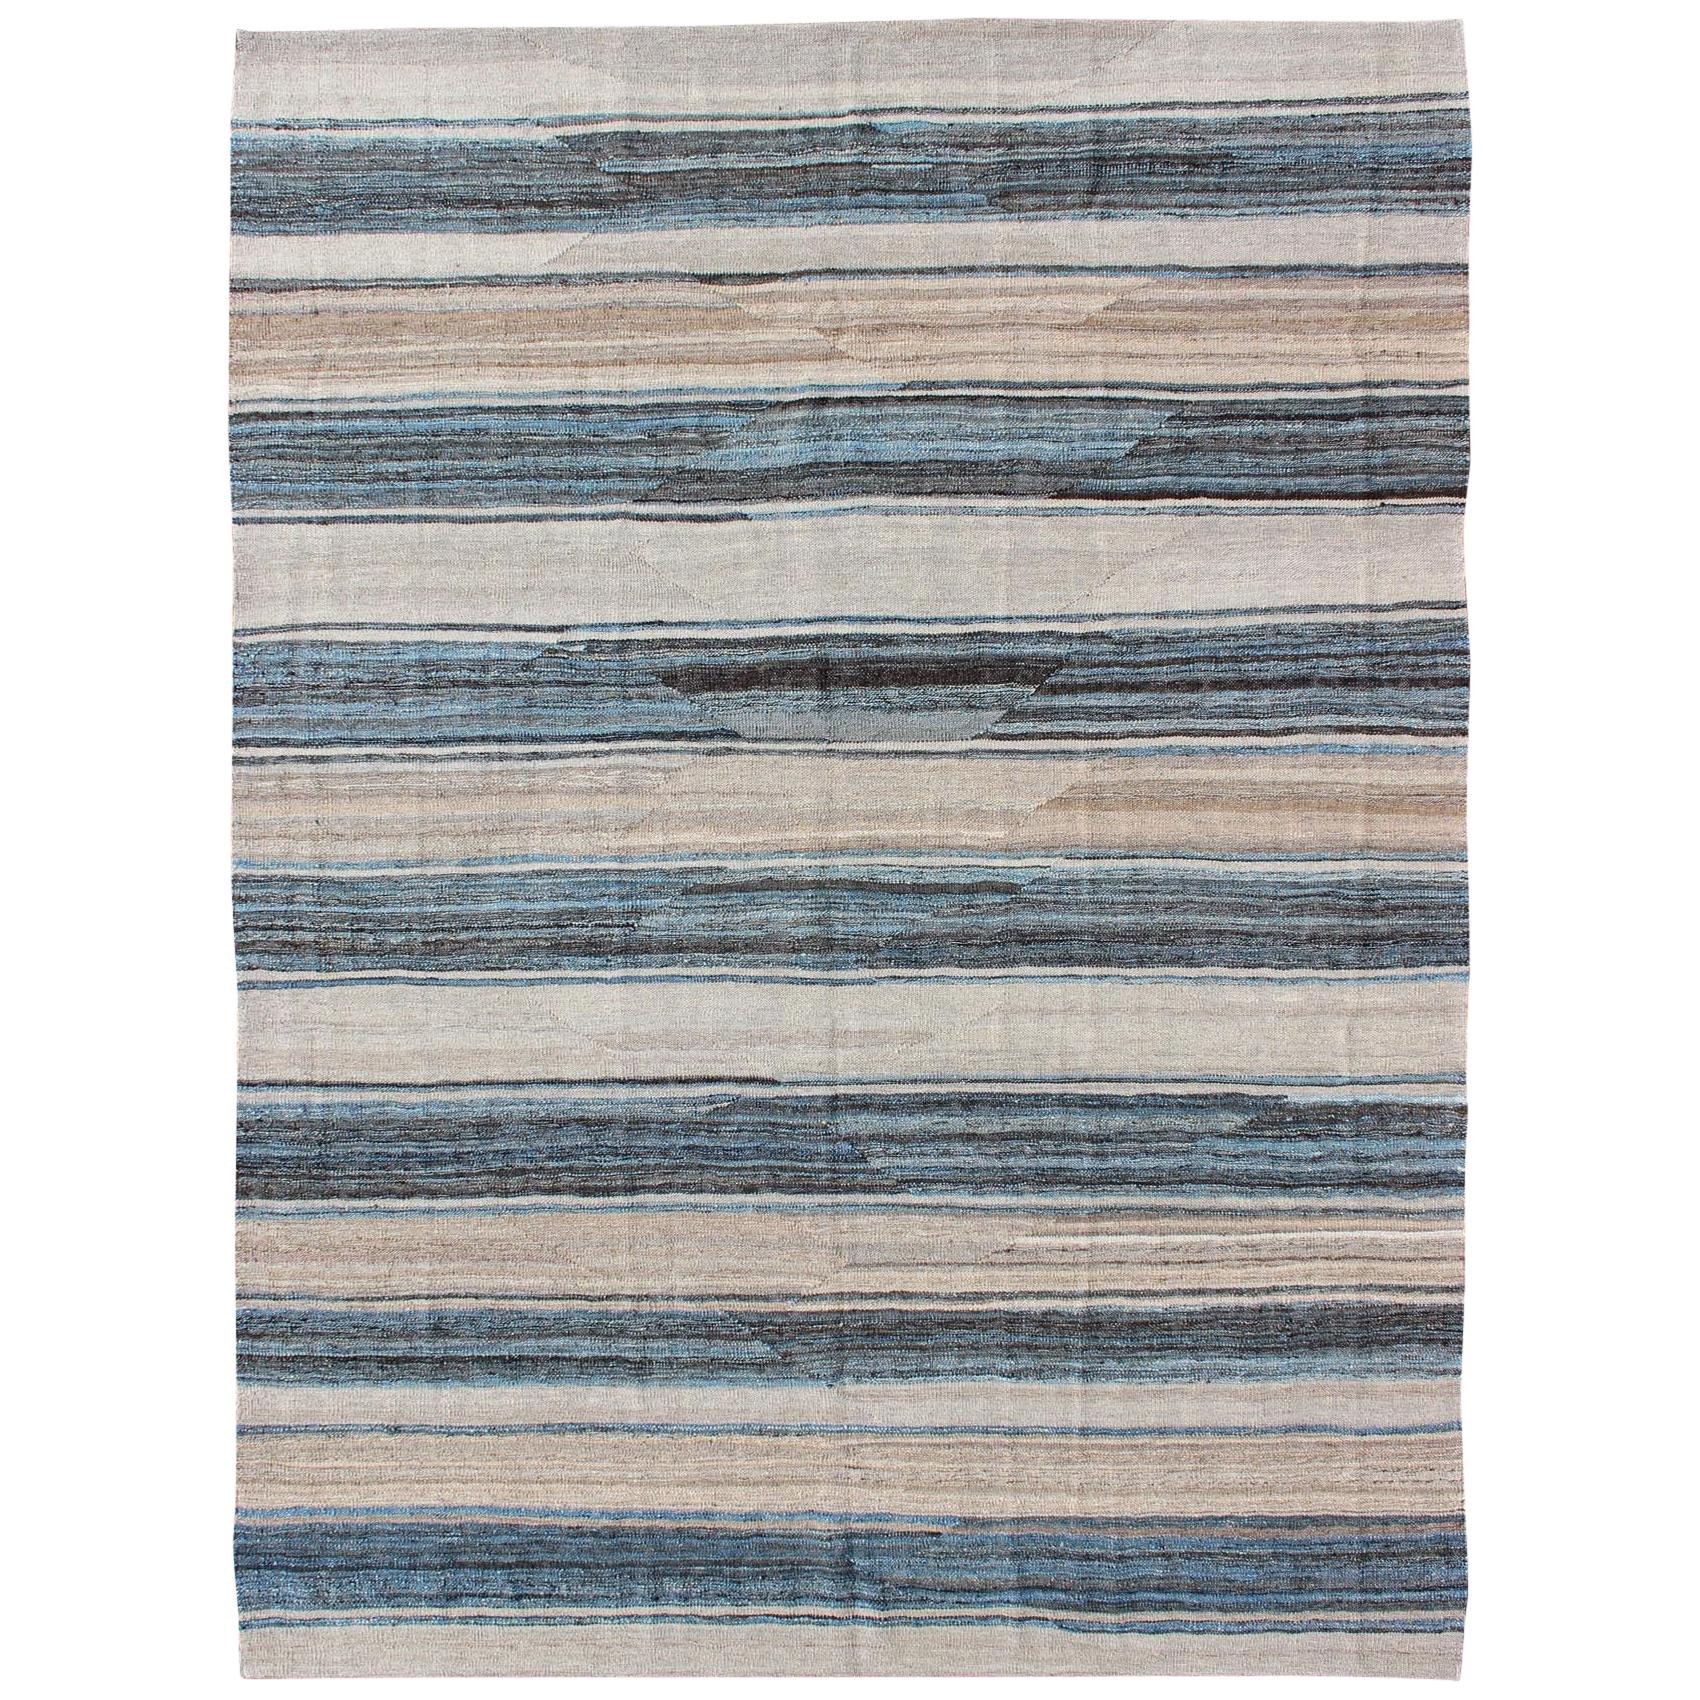 Moderner Flachgewebter Kelim-Teppich mit Streifen in Blau-, Anthrazit- und Elfenbeintönen